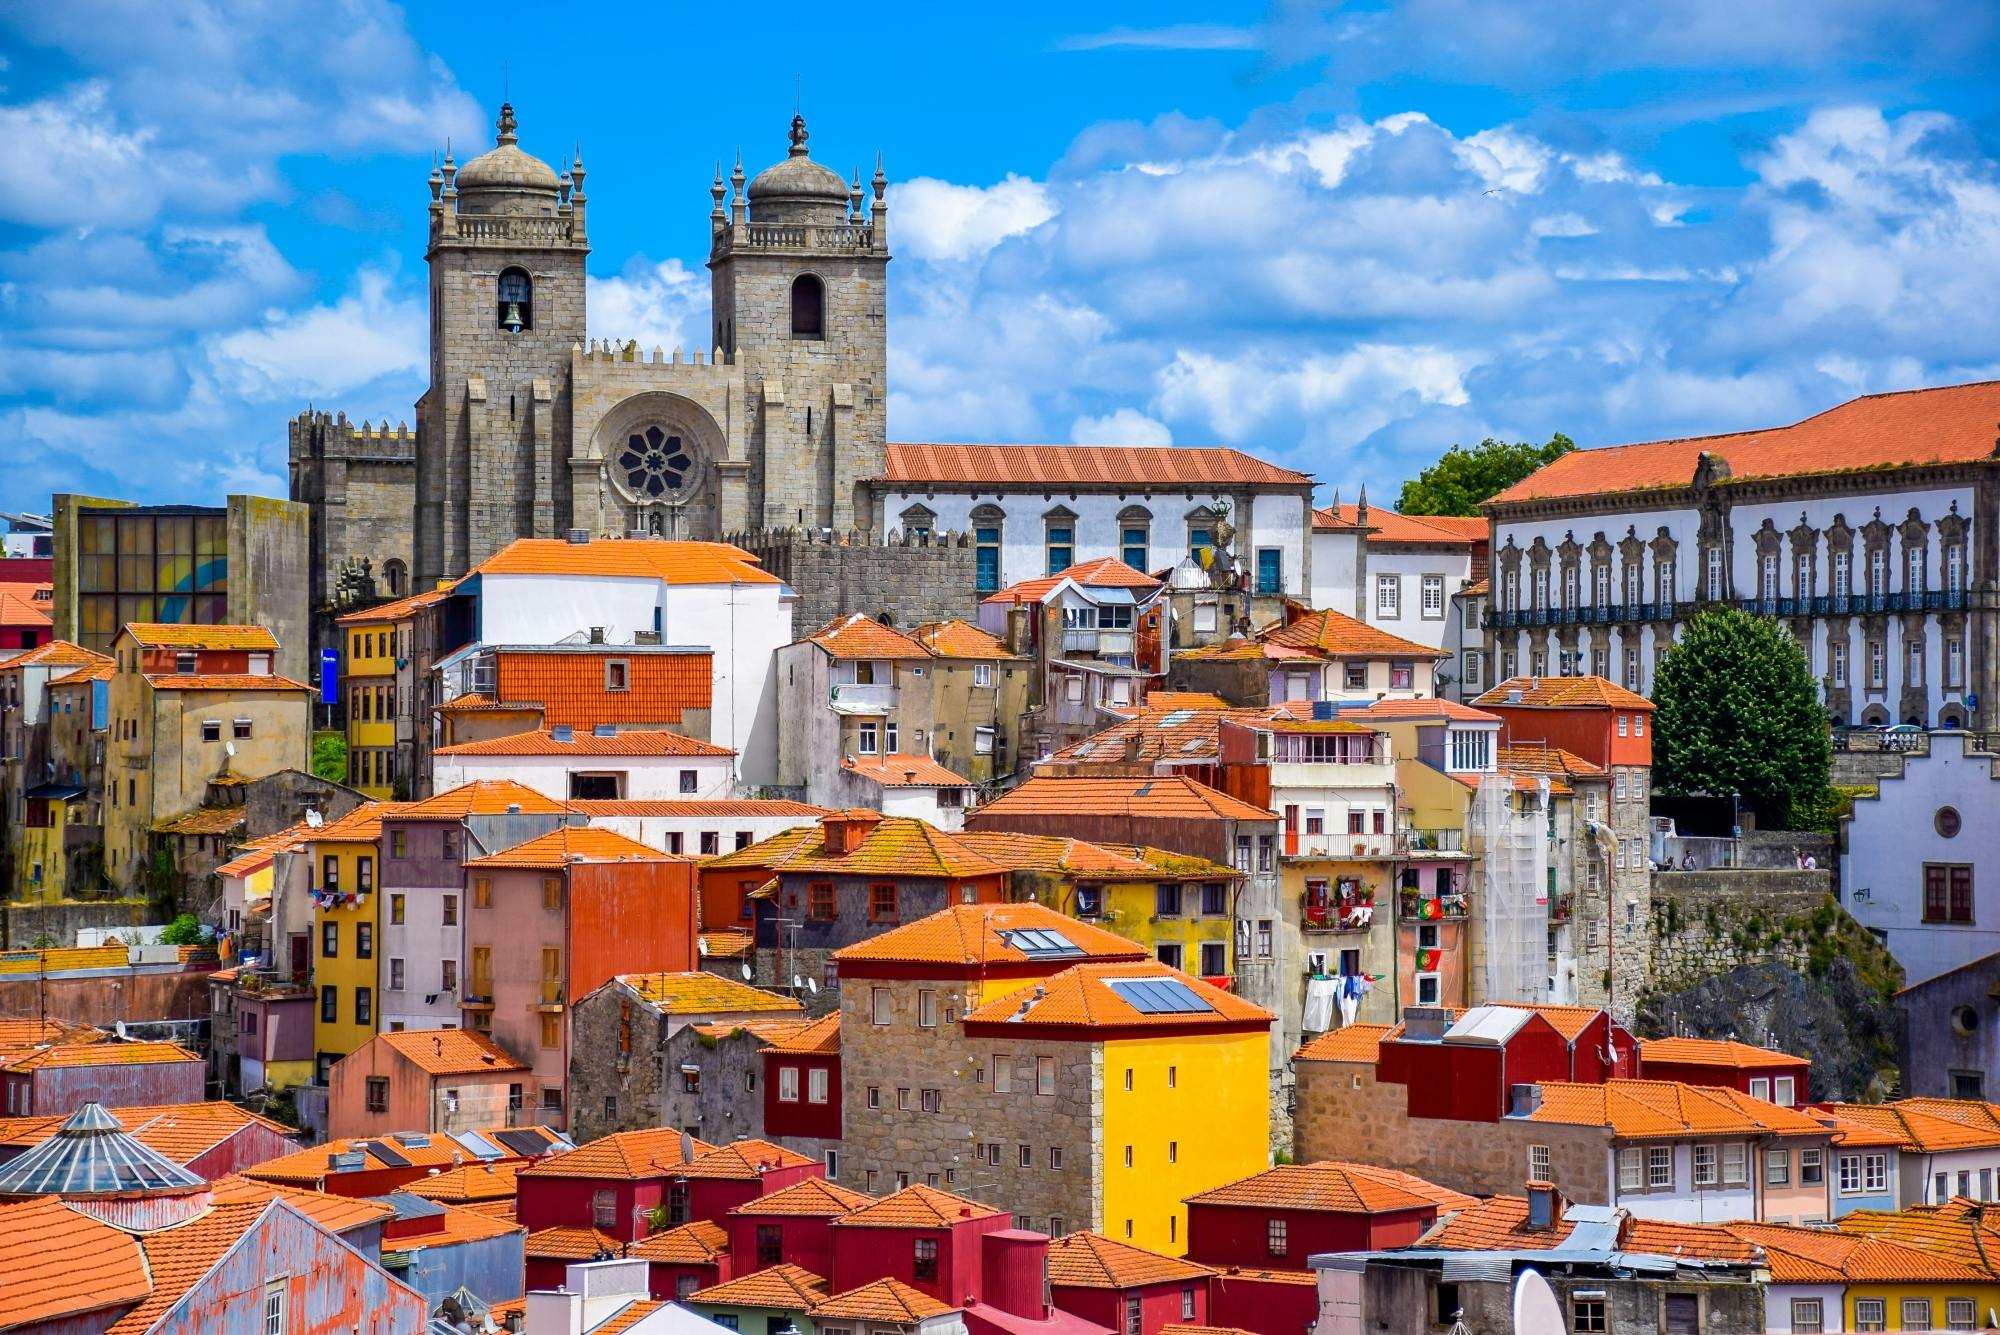 Tour door Porto per tuk-tuk en rondleiding door de portwijnkelder met proeverijen